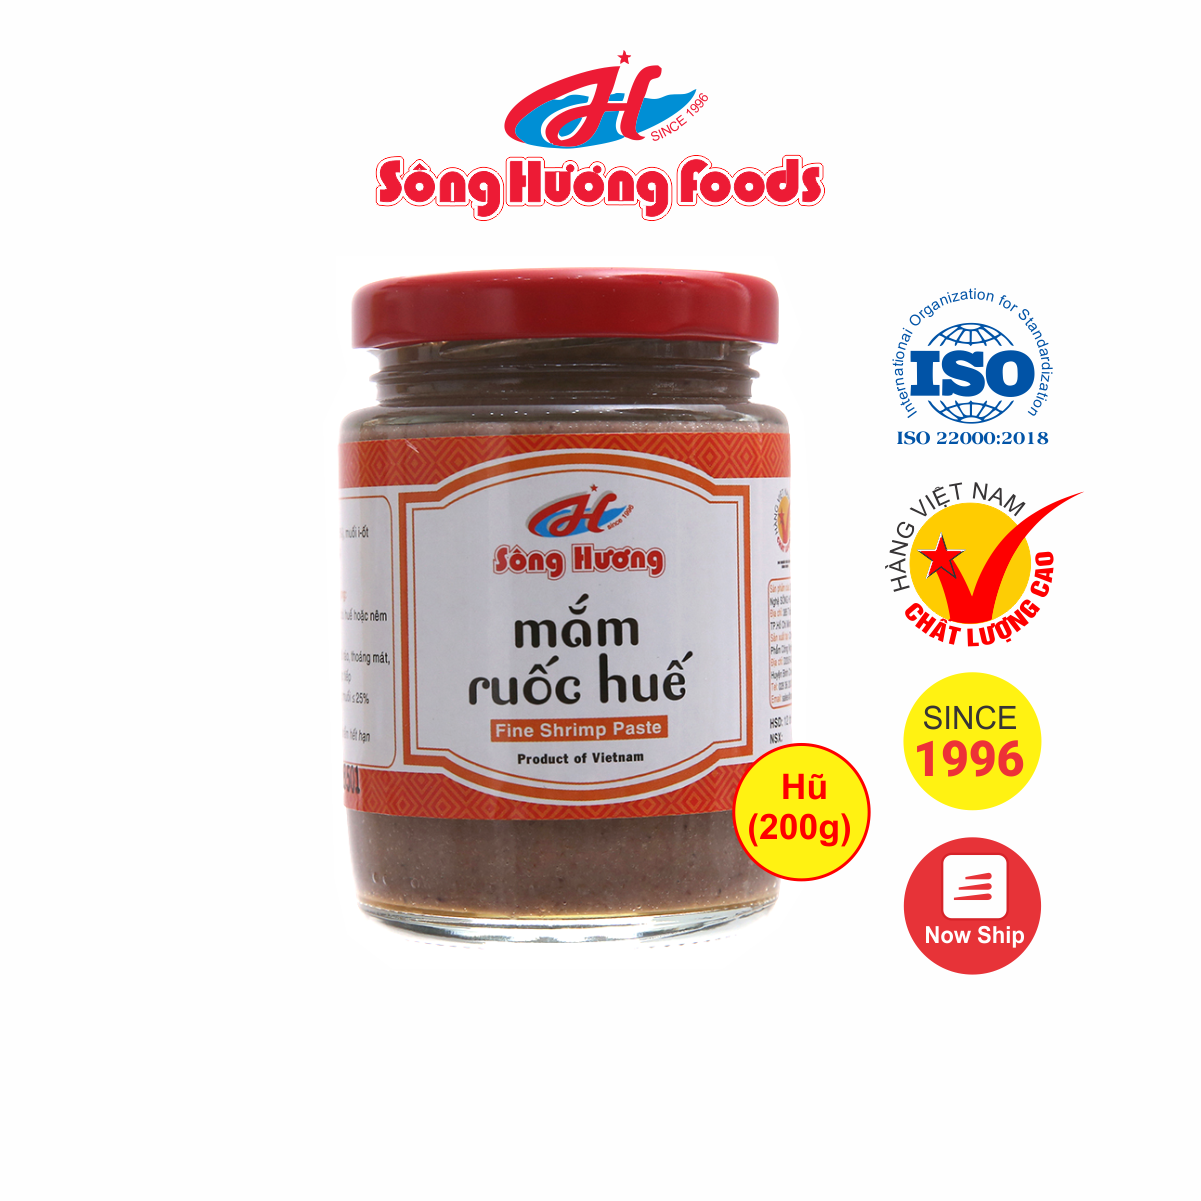 Mắm Ruốc Huế Sông Hương Foods Hũ 200g